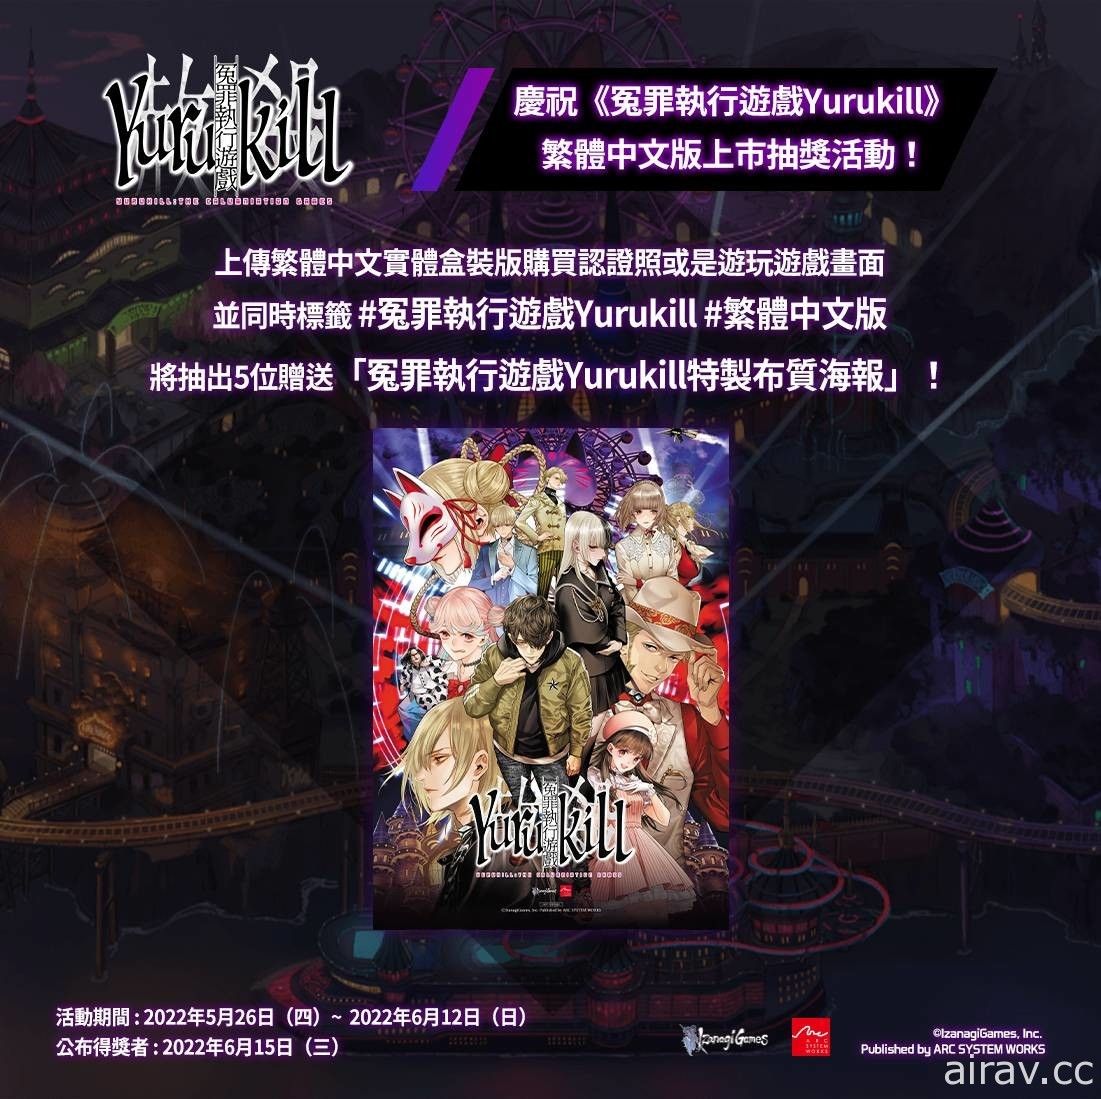 《冤罪执行游戏 Yurukill》繁体中文版今日正式推出 将同步举办庆祝上市活动